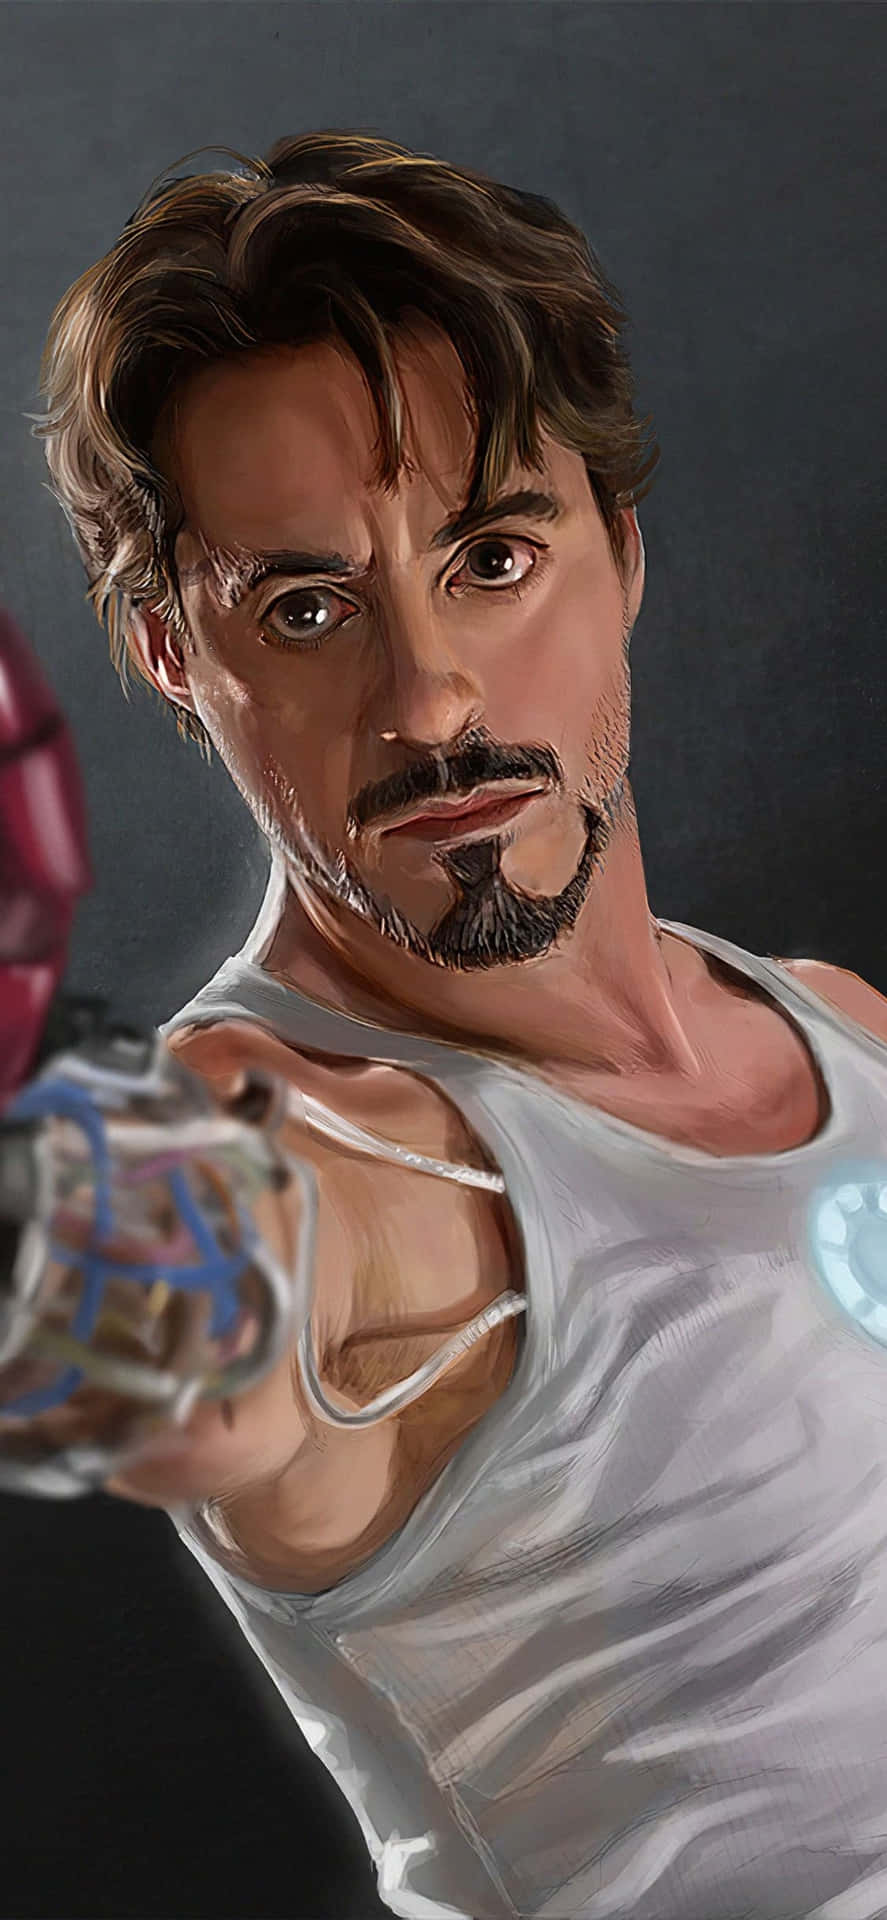 Iphonex Bakgrundsbild Med Iron Man - Tony Stark Utan Sin Dräkt.